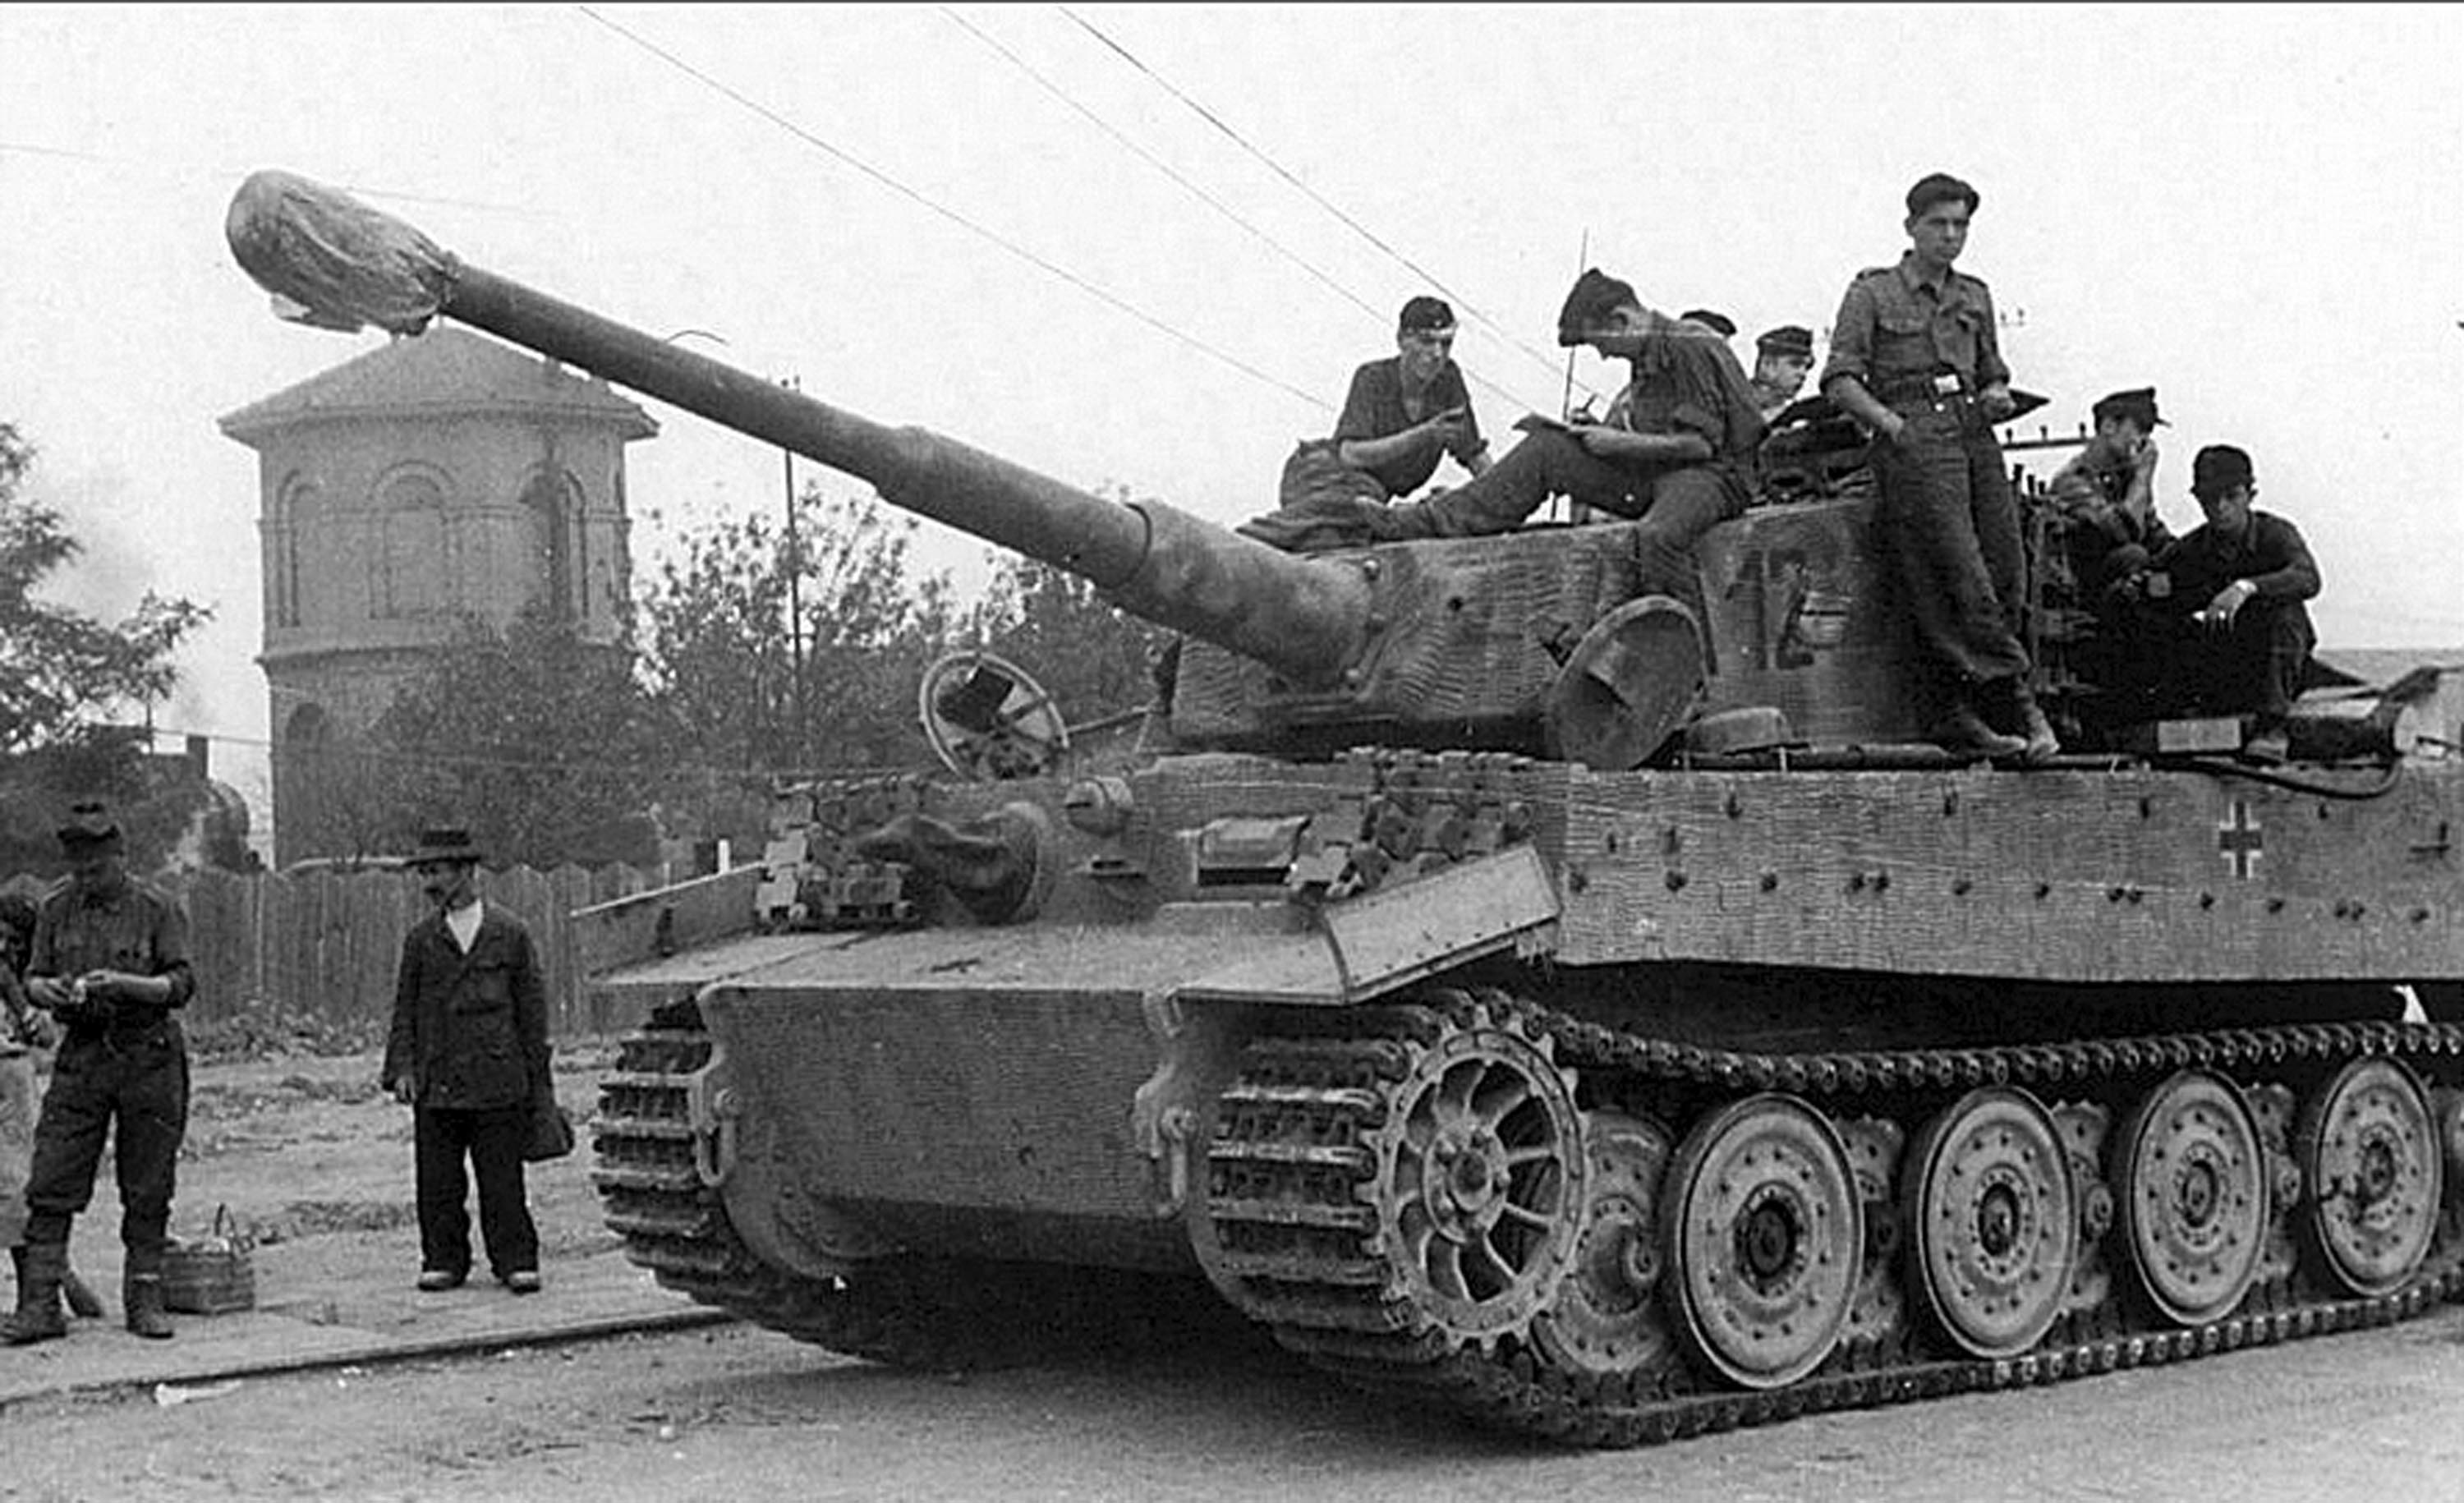 Xe tăng Tiger I là vũ khí quân sự được Đức sử dụng trong Chiến tranh thế giới thứ II